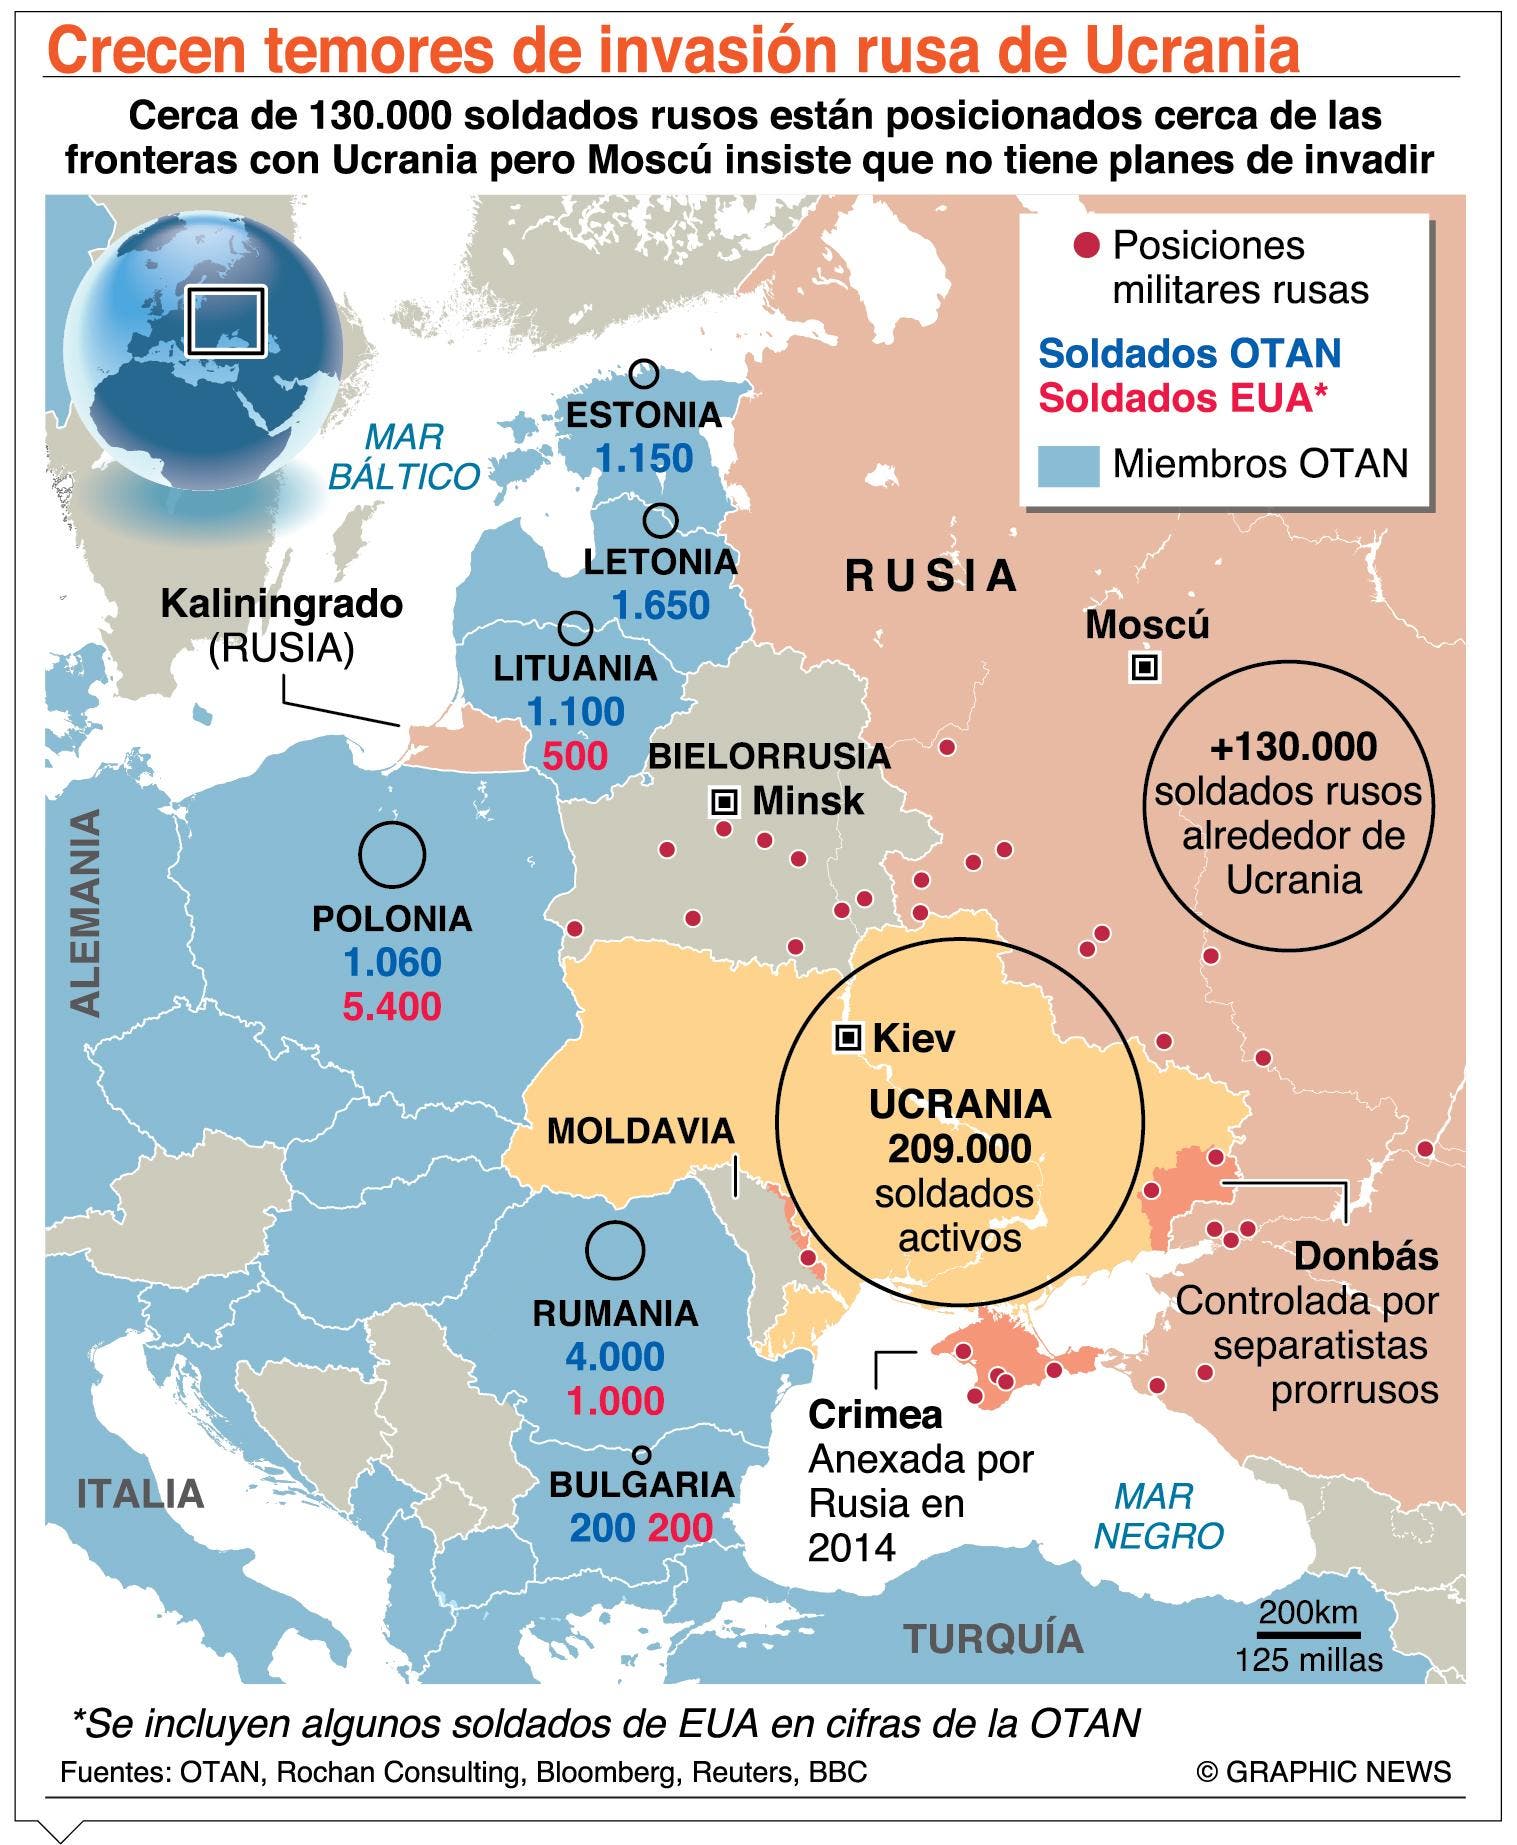 EE. UU. no confía en repliegue; teme invasión rusa a Ucrania